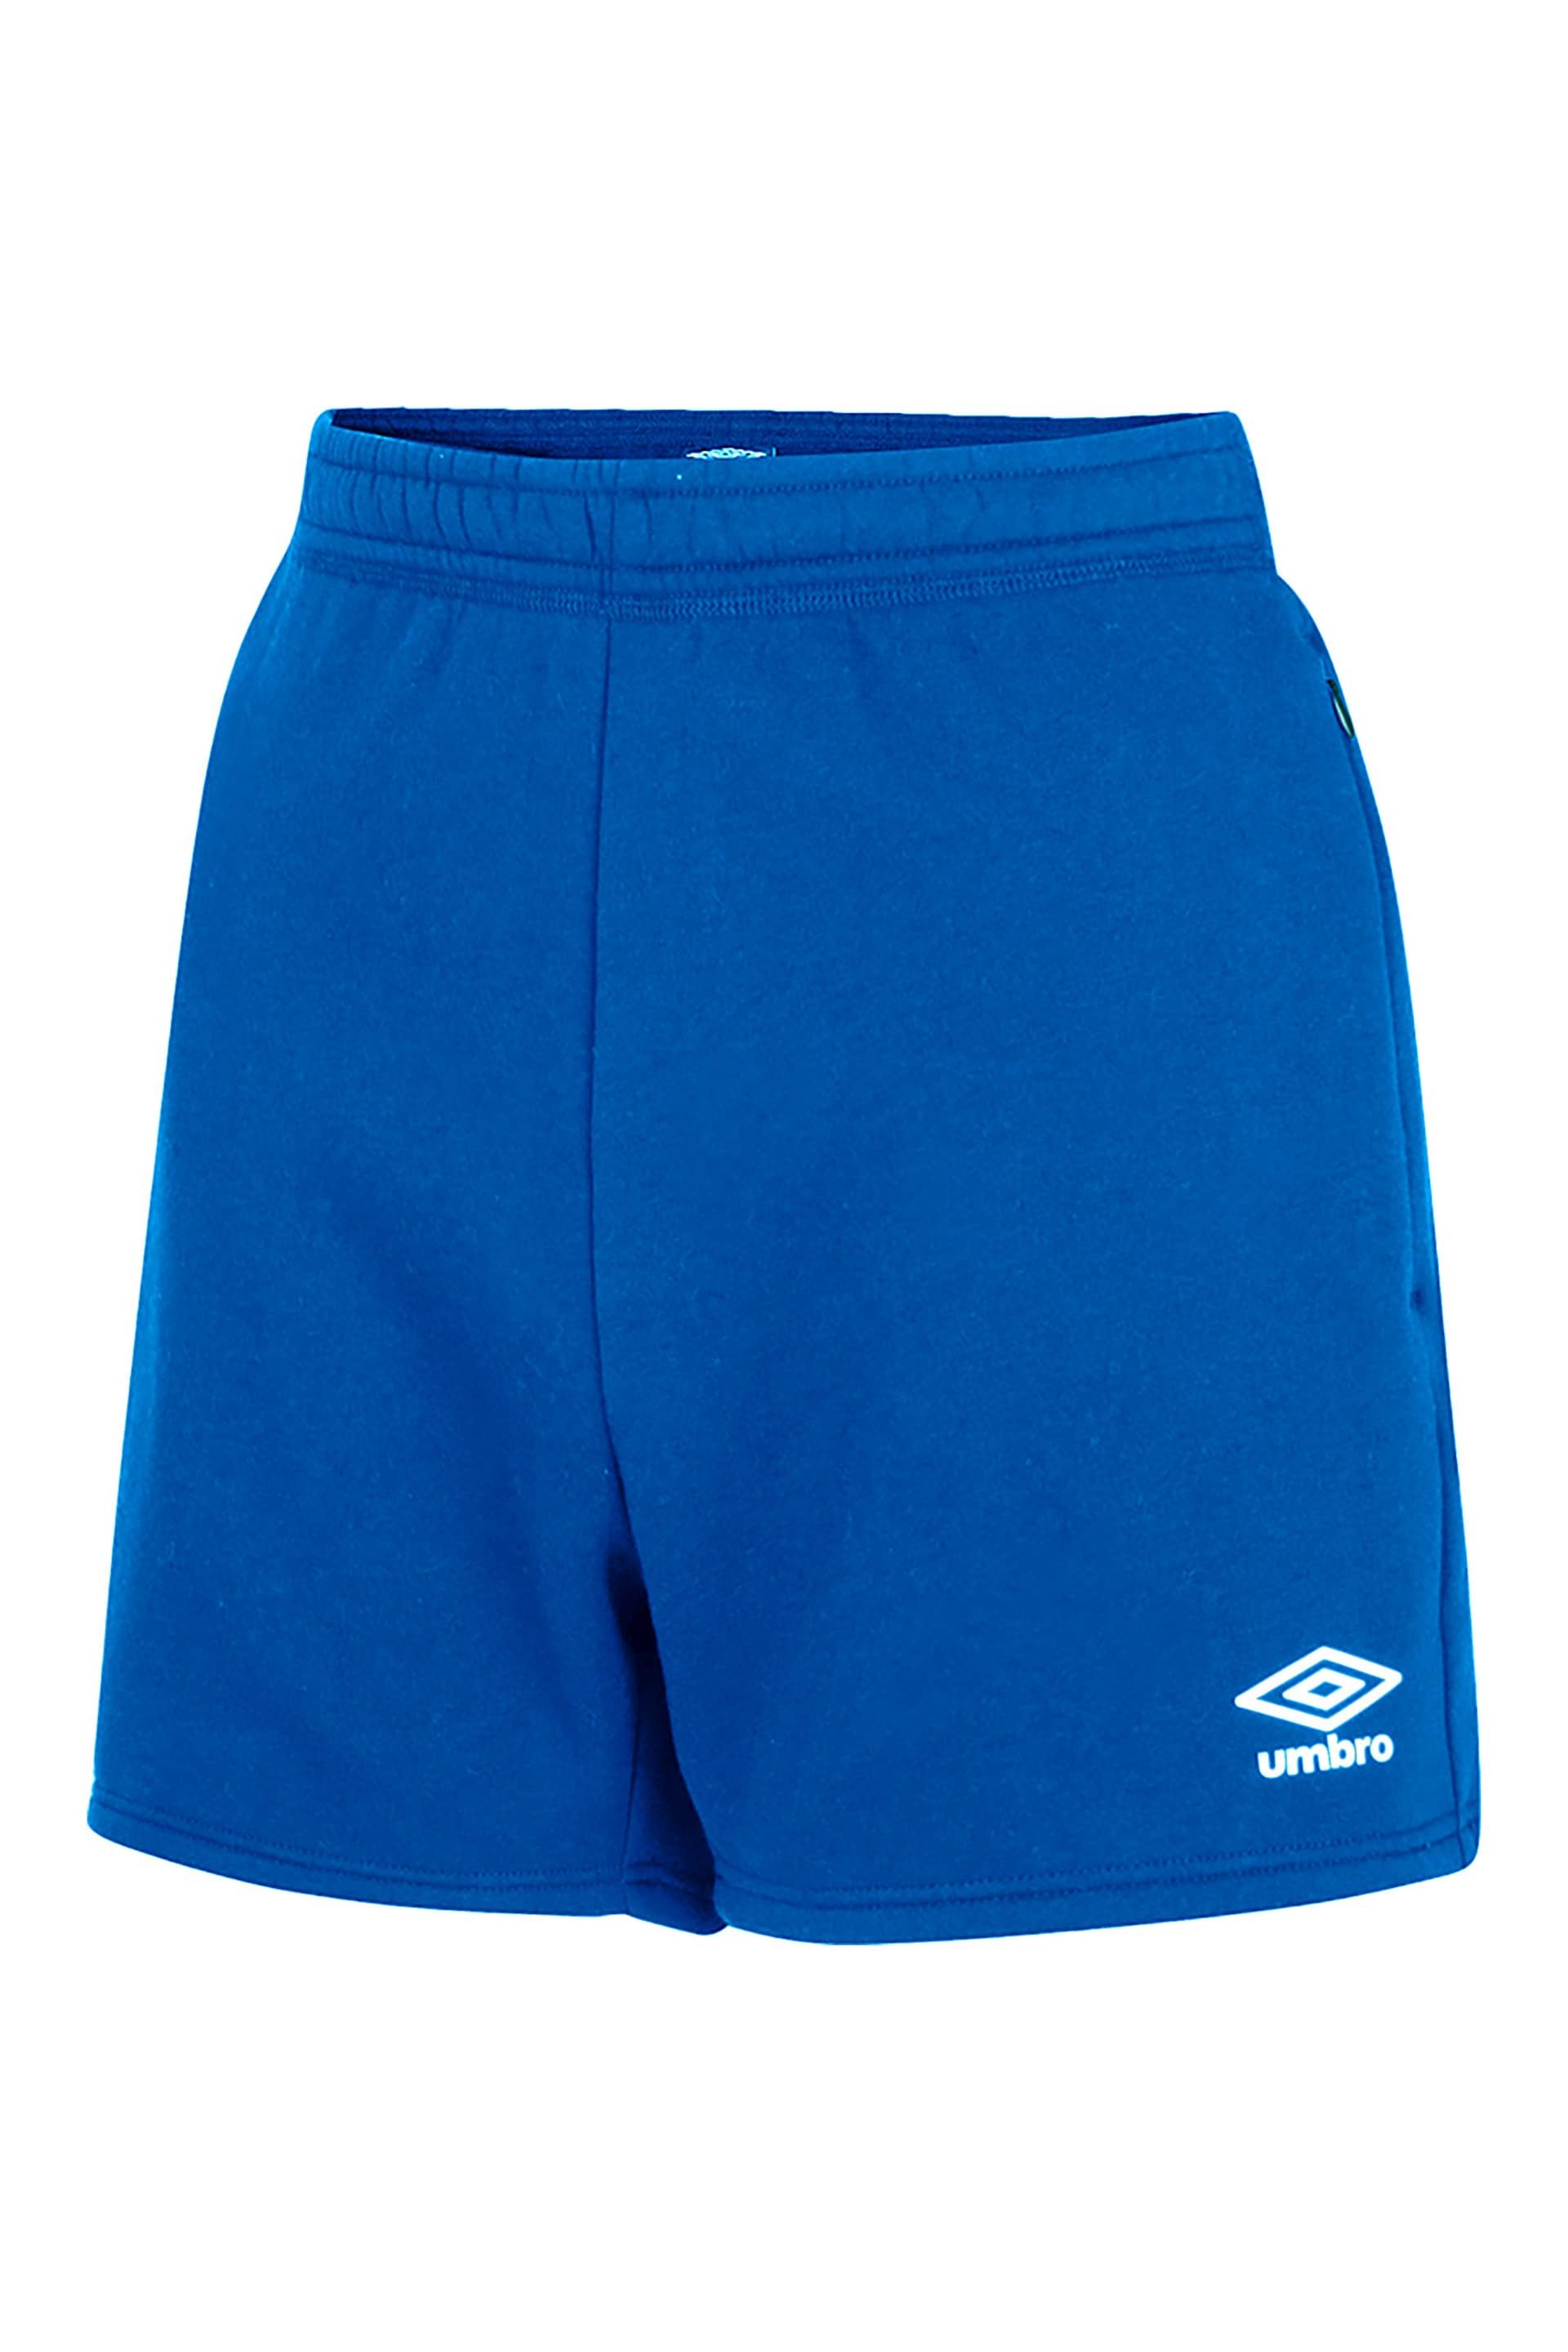 Umbro Blue Club Leisure Jog Shorts - Image 5 of 5